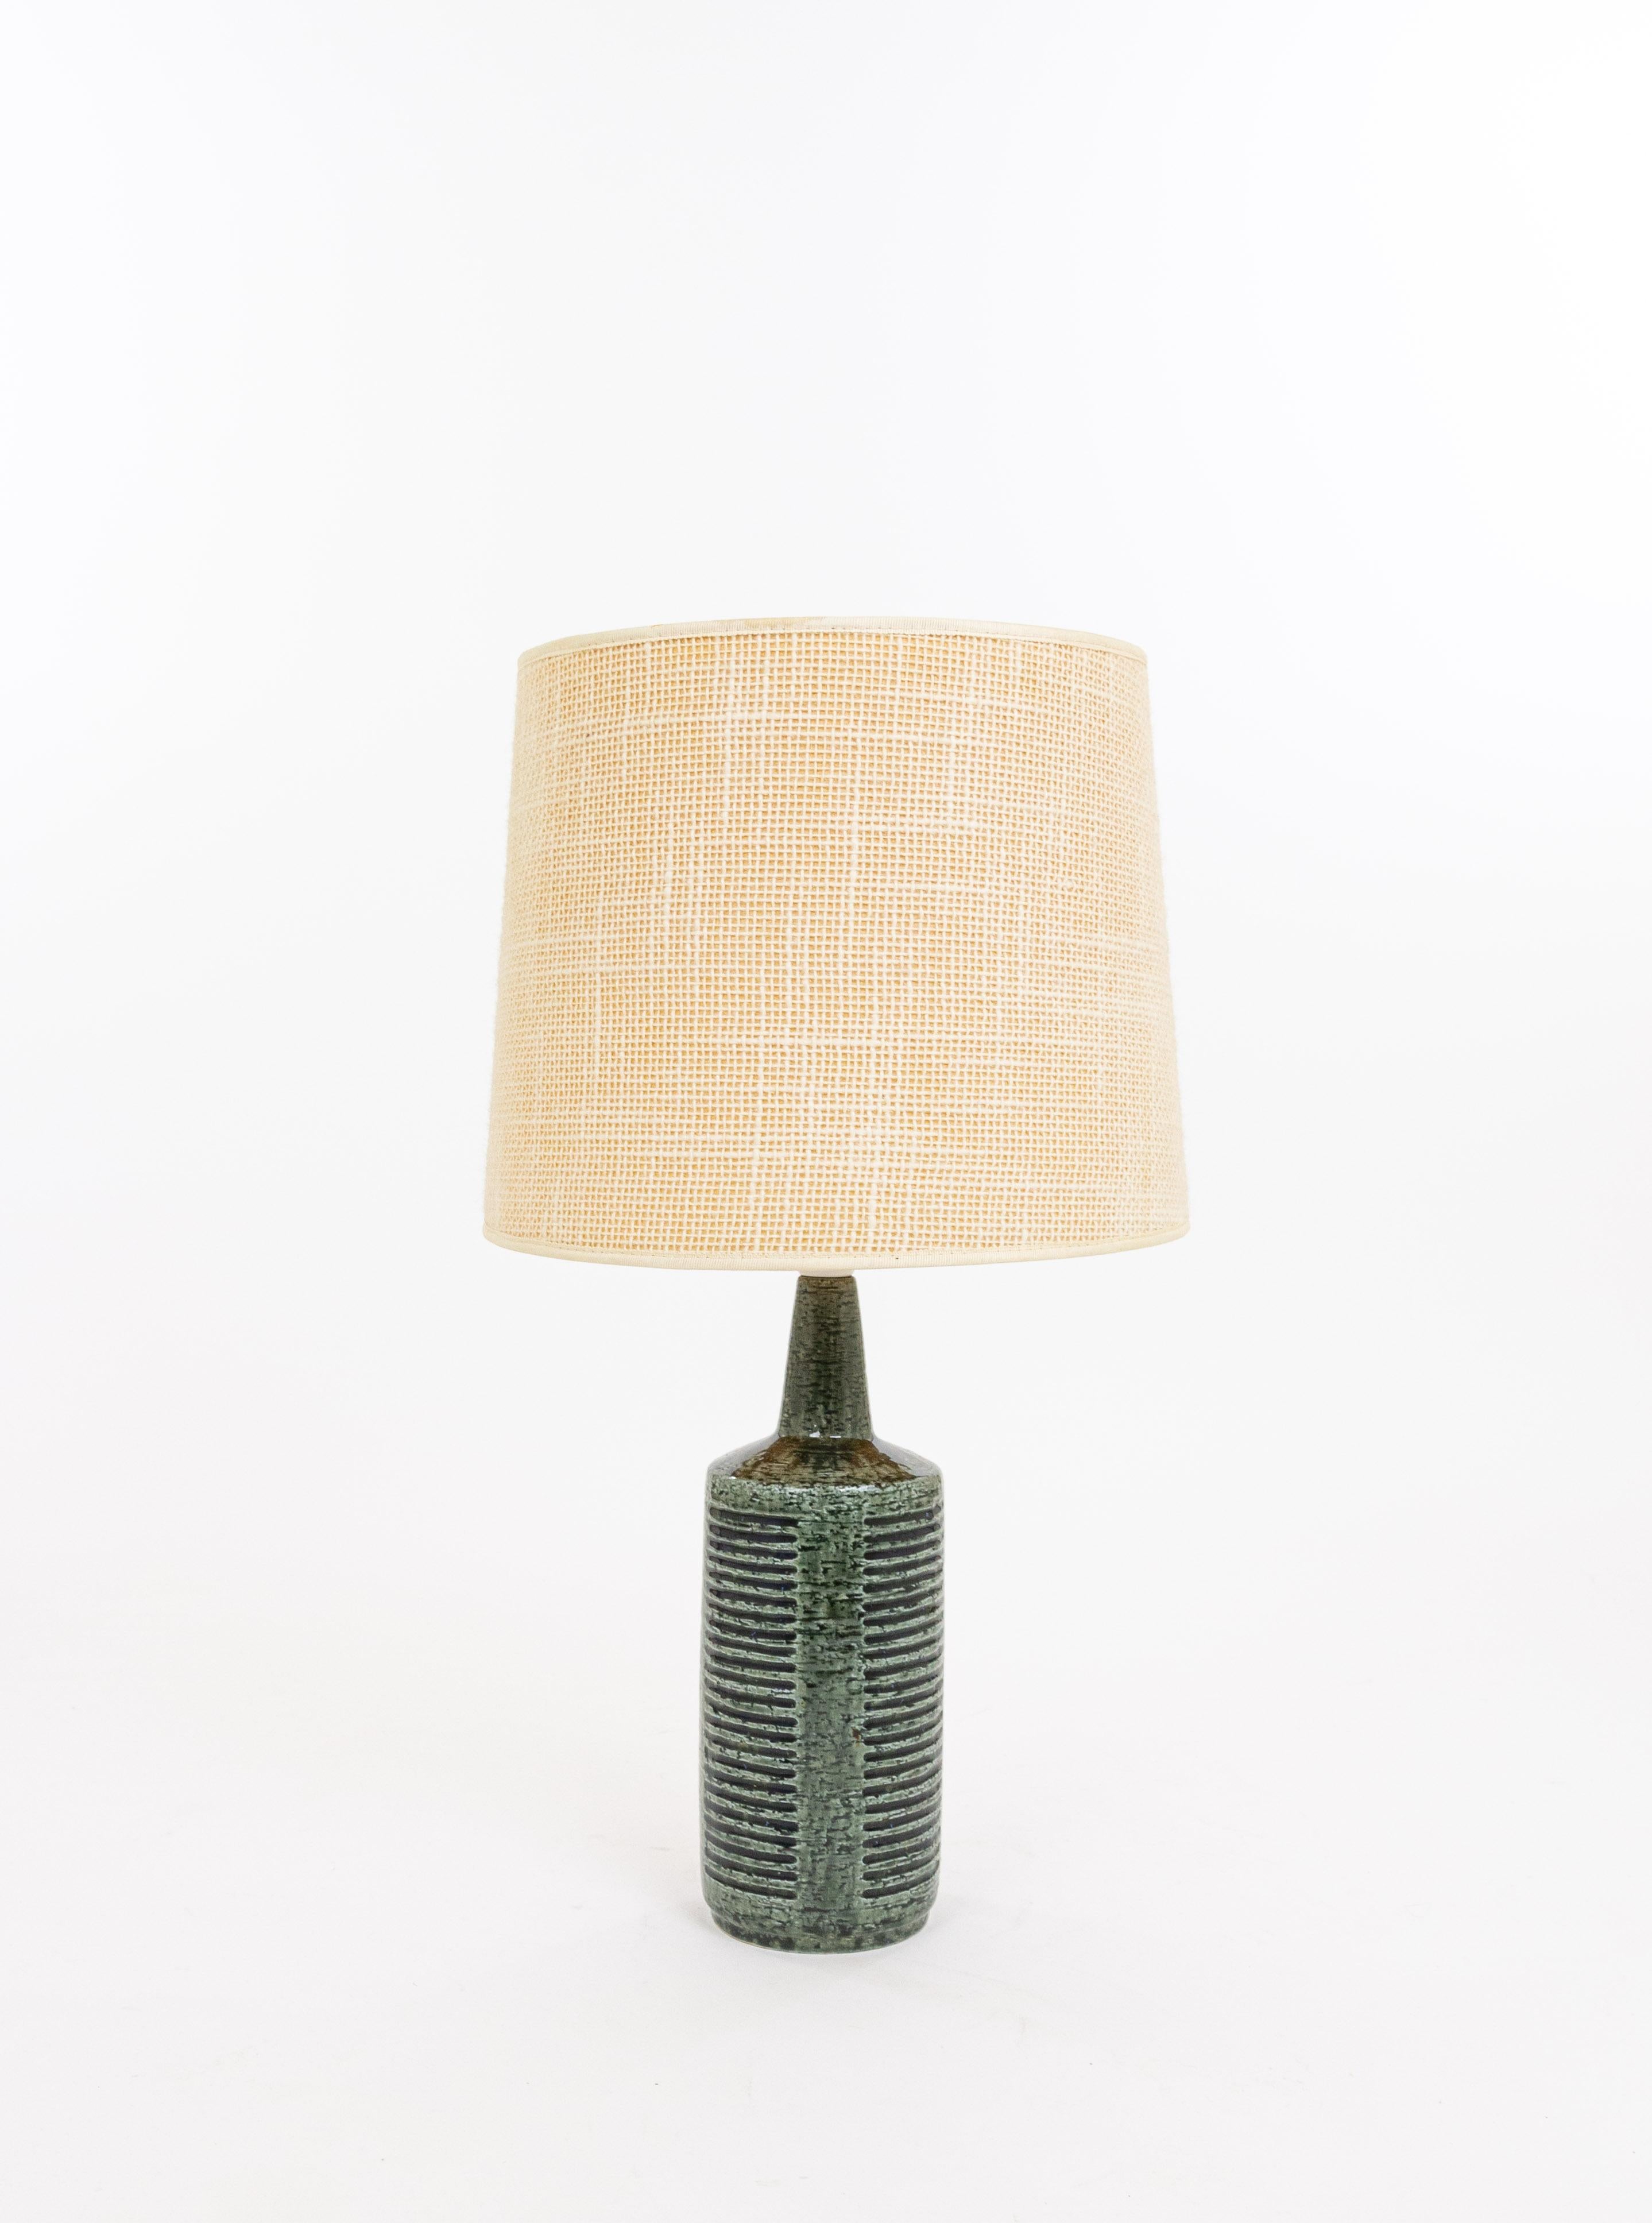 Scandinavian Modern Green & Charcoal DL/30 table lamp by Linnemann-Schmidt for Palshus, 1960s For Sale